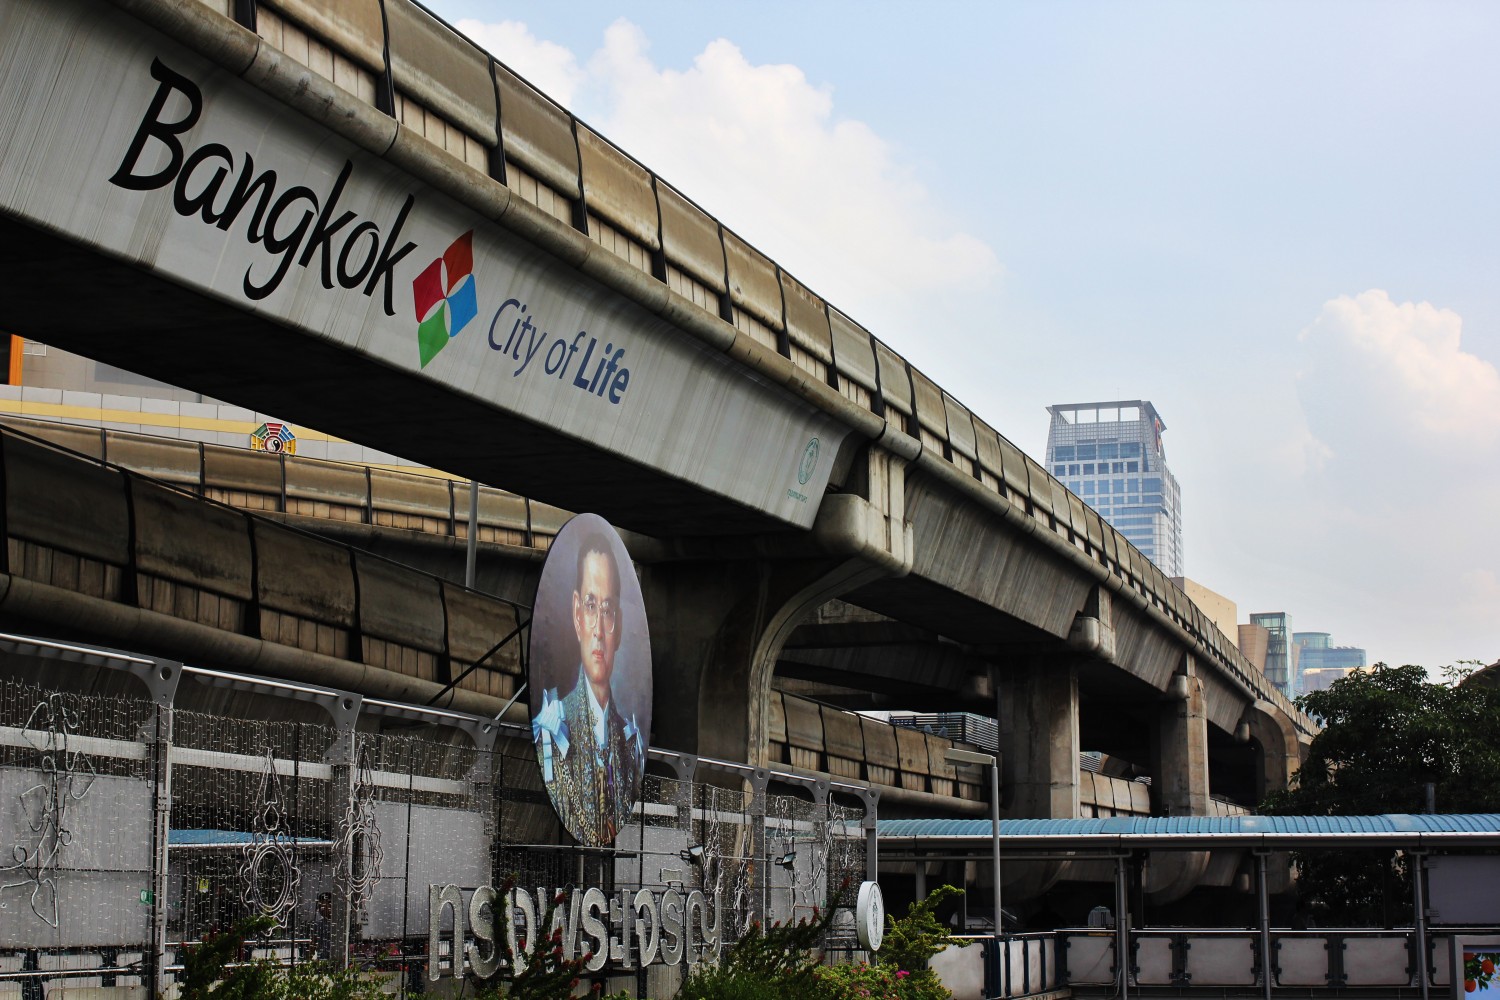 Bangkok - City of life